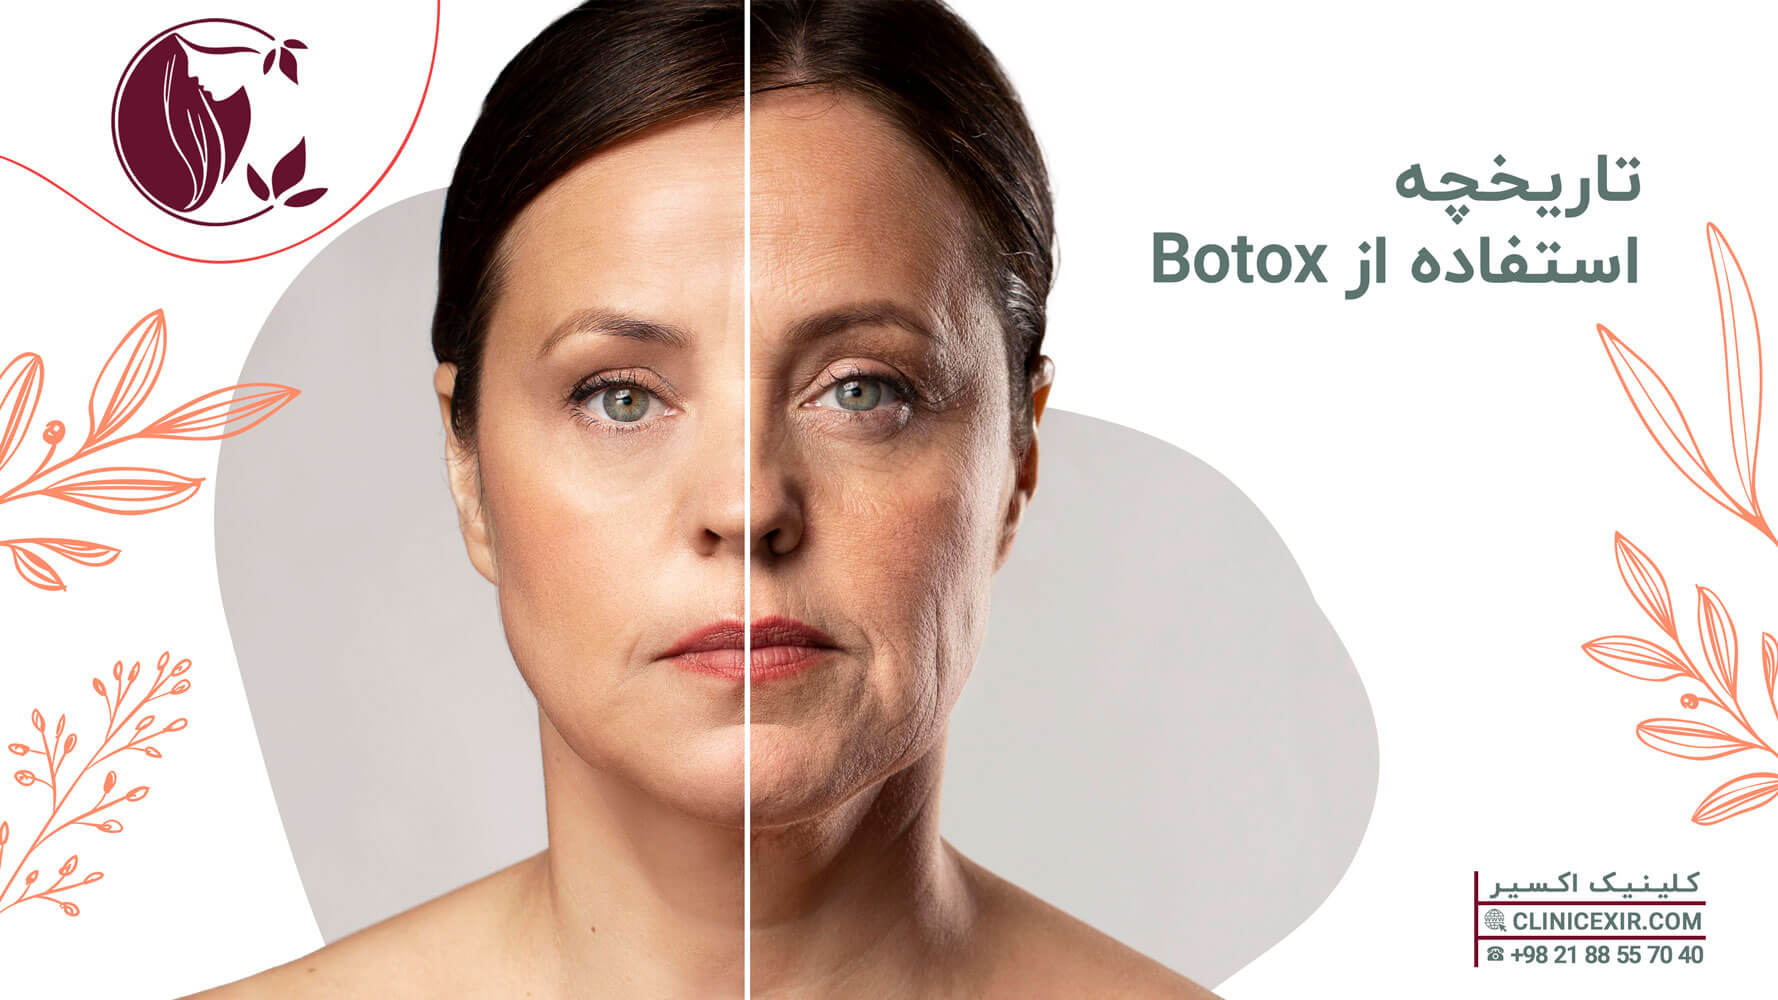 تاریخچه استفاده از Botox 